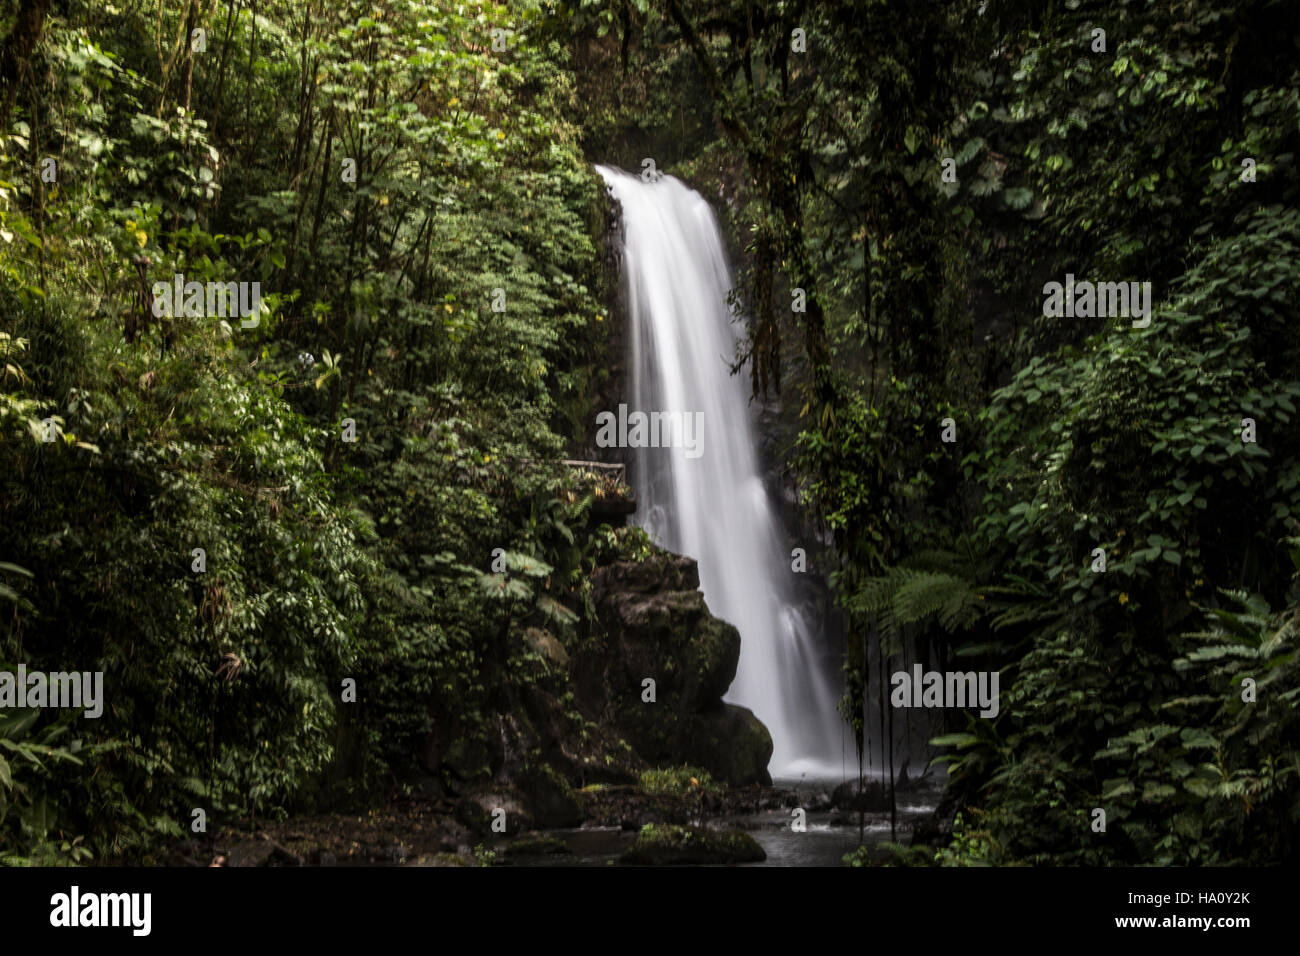 Templo waterfall in Costa Rica Stock Photo